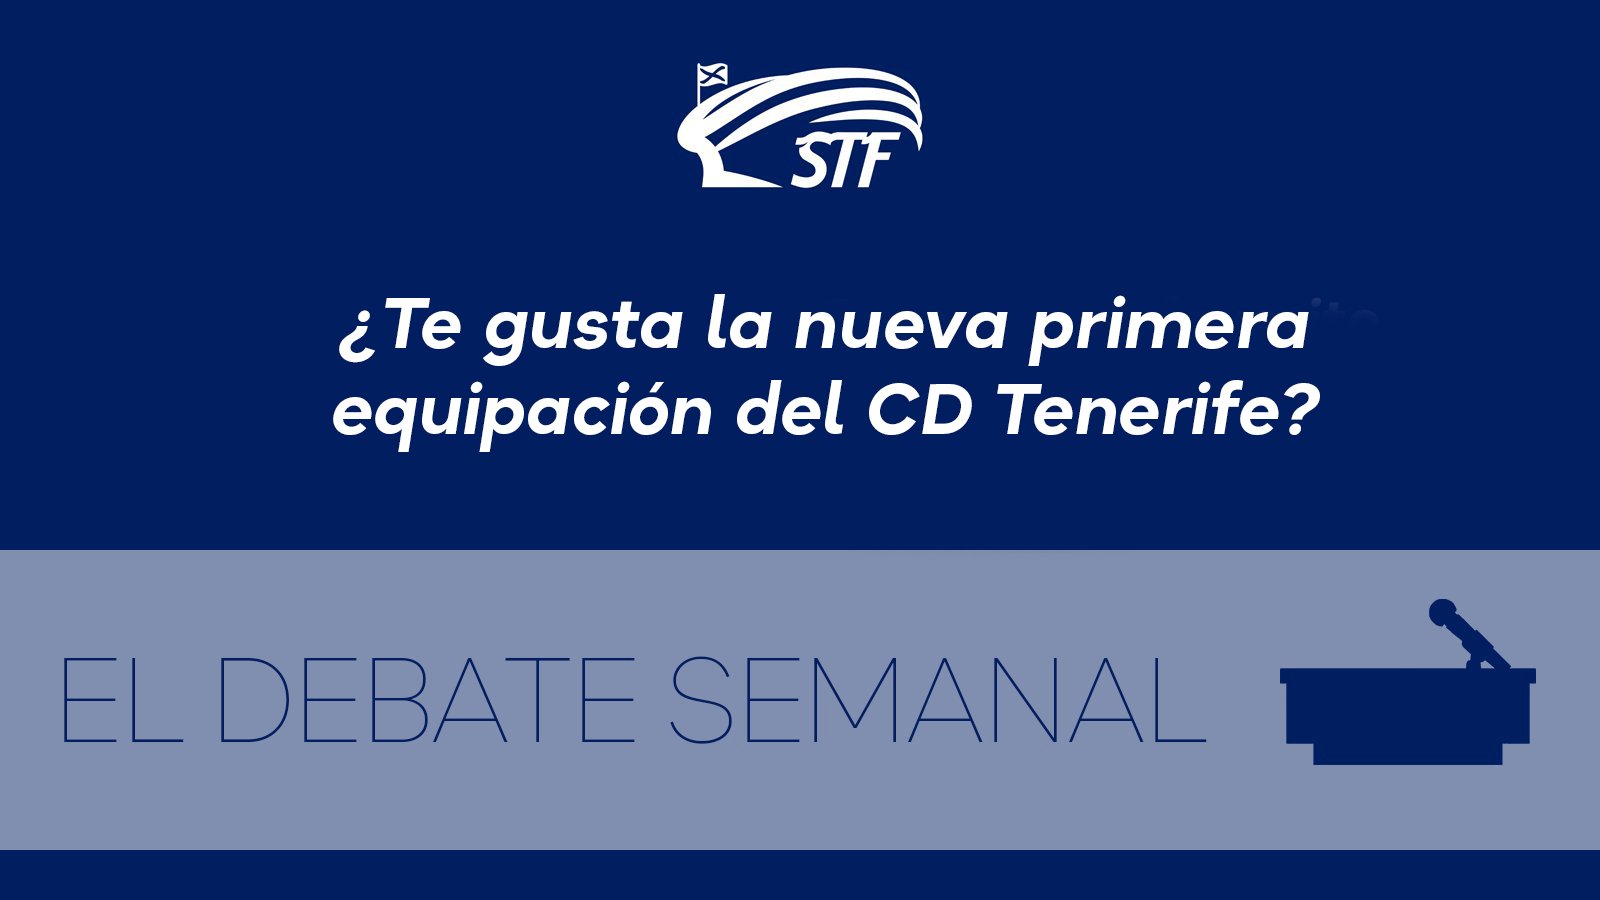 El Debate Semanal: ¿Te gusta la nueva primera equipación del CD Tenerife? El 92,8% dice sí